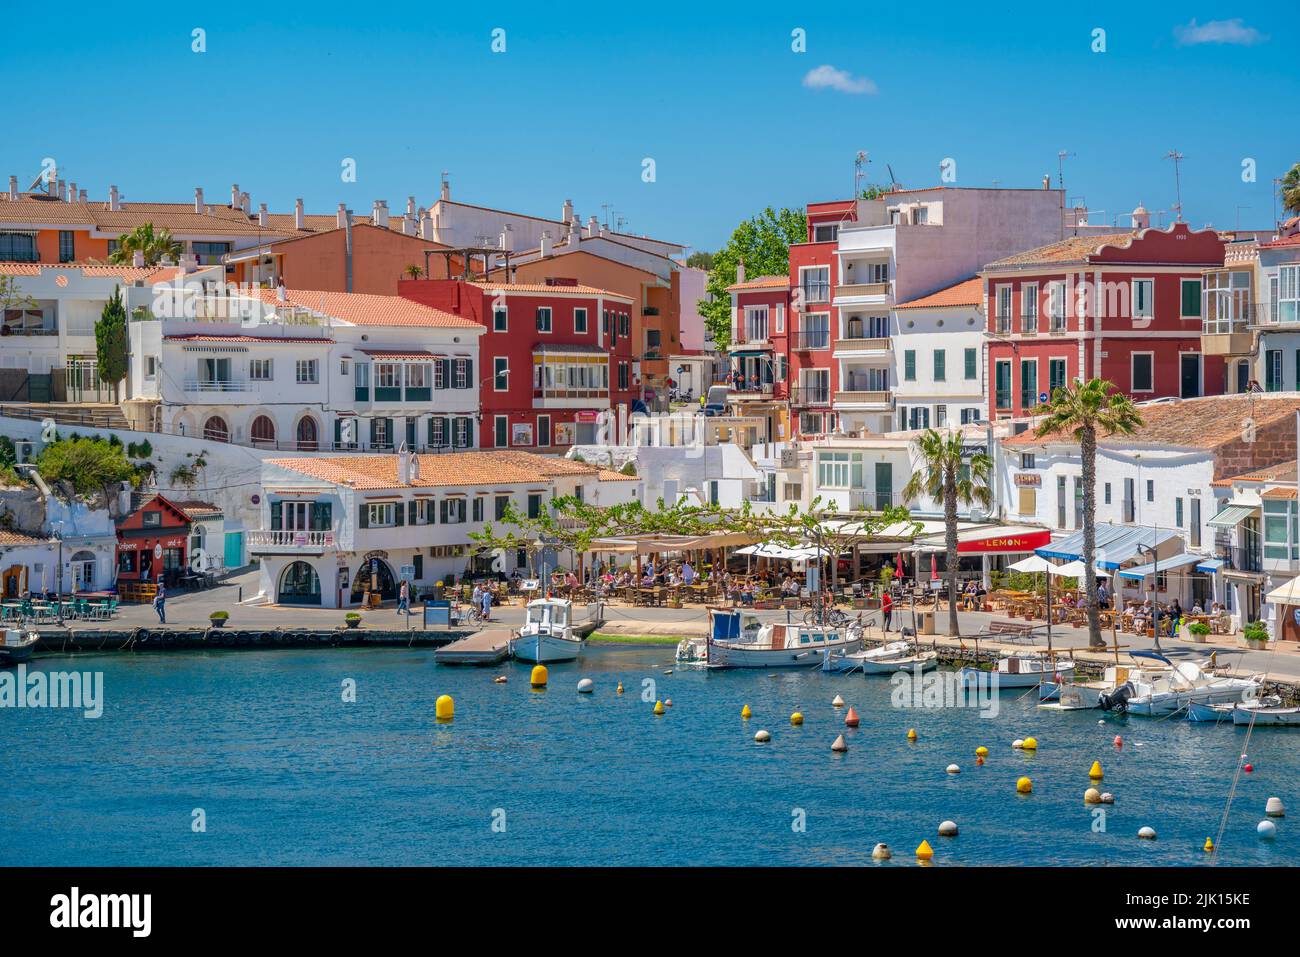 Vista de coloridos cafés, restaurantes y barcos en el puerto contra el cielo azul, Cales Fonts, Menorca, Islas Baleares, España, Mediterráneo, Europa Foto de stock